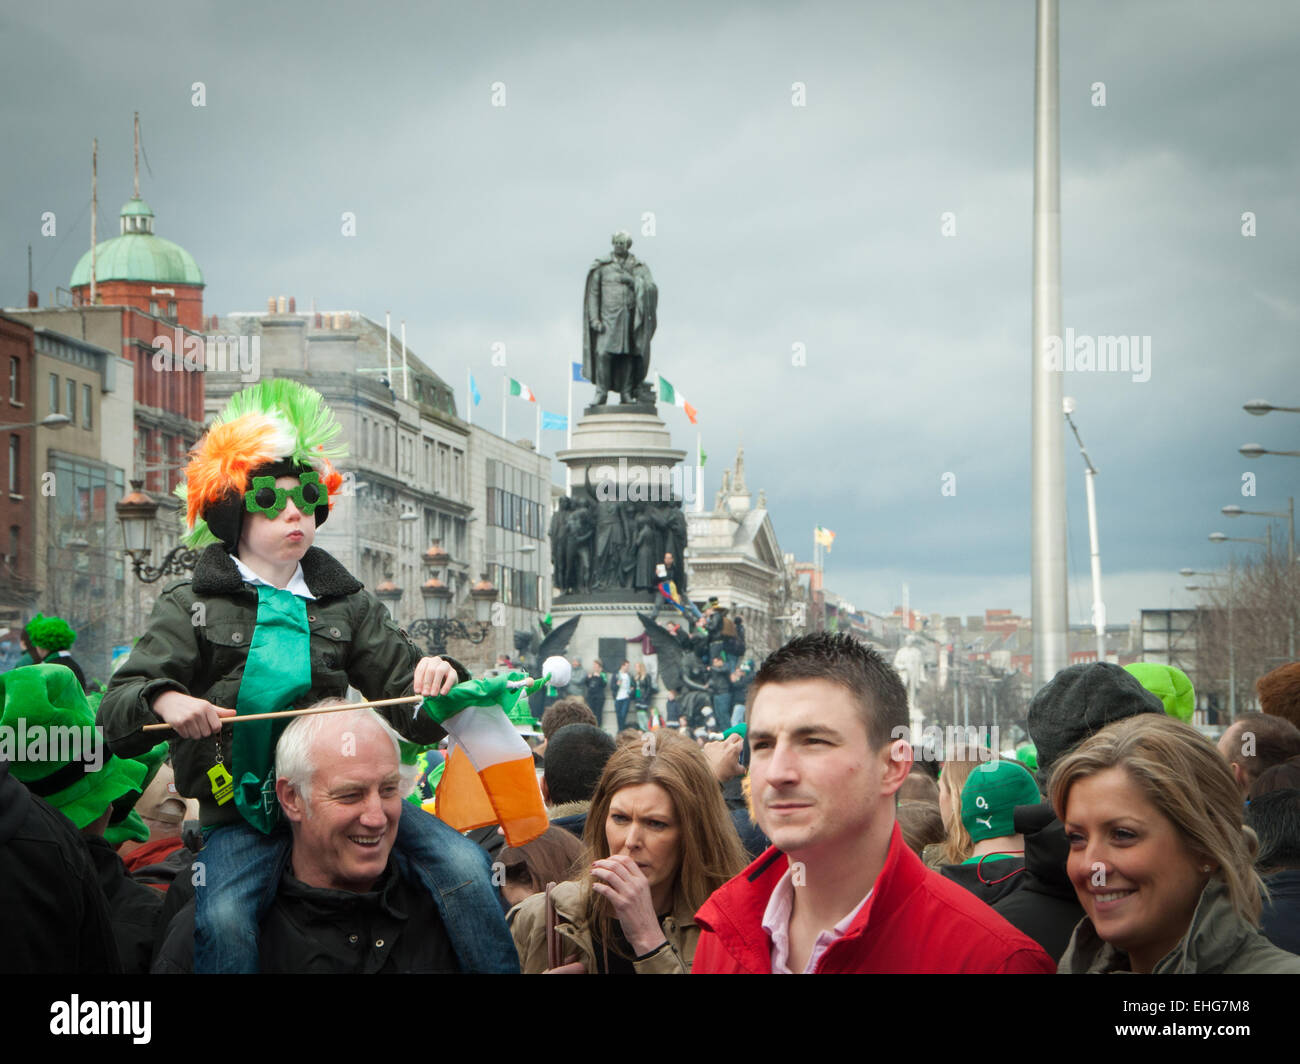 Jeune garçon sur les épaules du père irlandais a perruque, lunettes et drapeau irlandais sur St Patrick's day dans O'Connell Street Dublin Irlande Banque D'Images